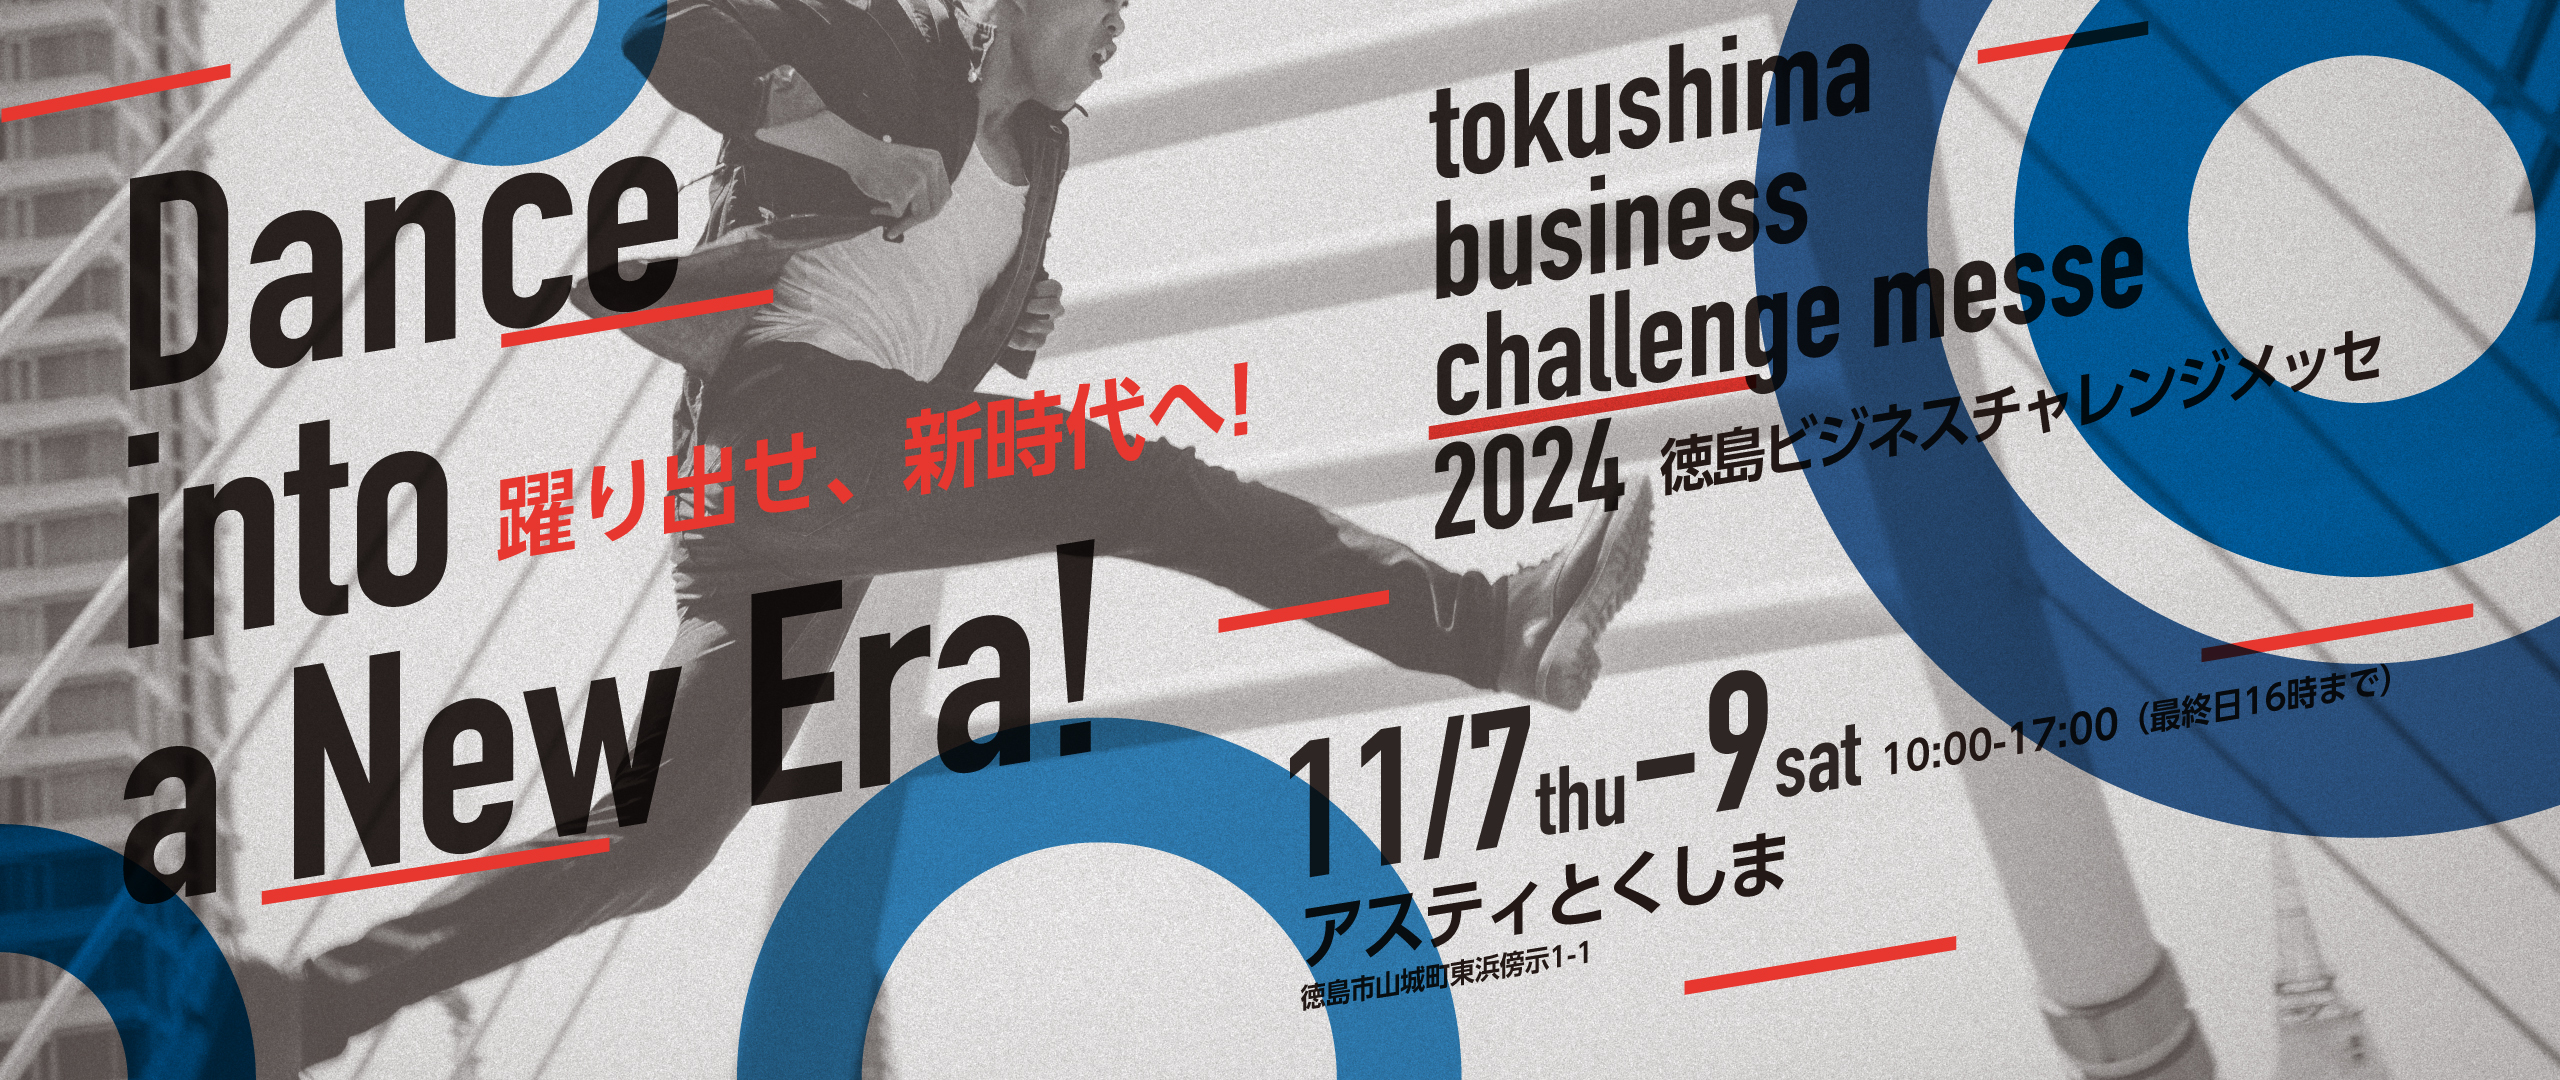 徳島ビジネスチャレンジメッセ2024